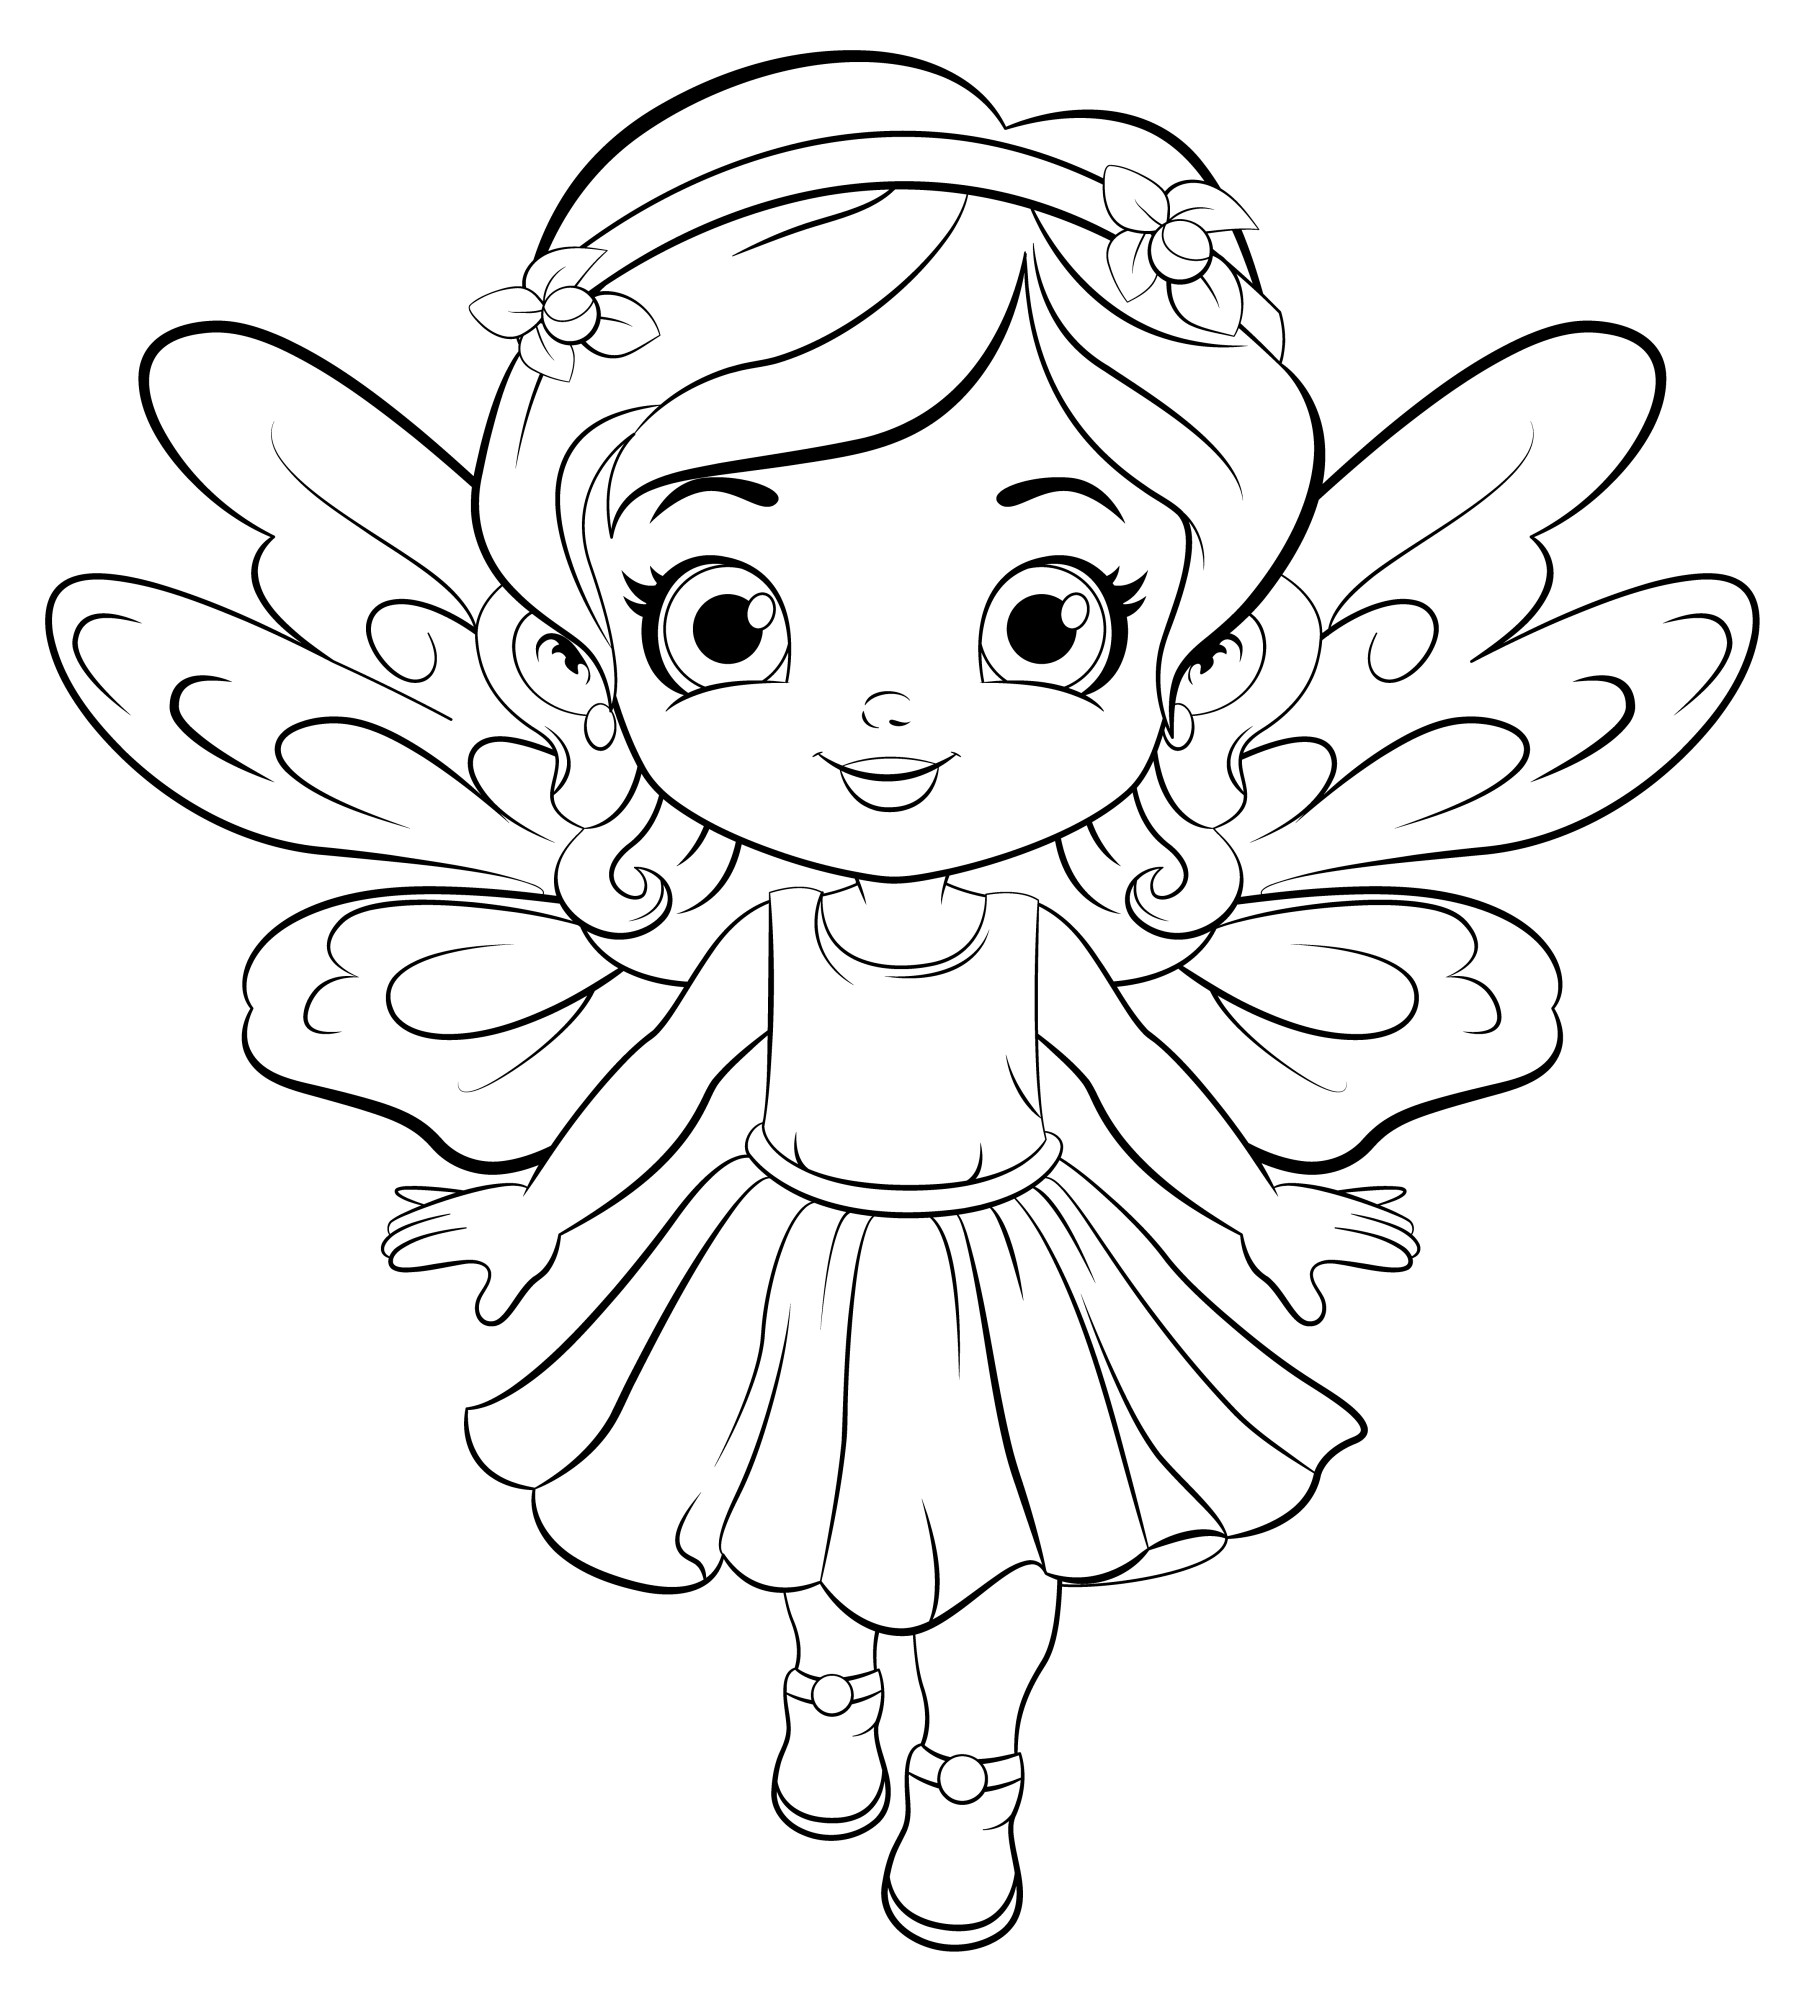 Раскраска для детей: маленькая девочка в костюме бабочка